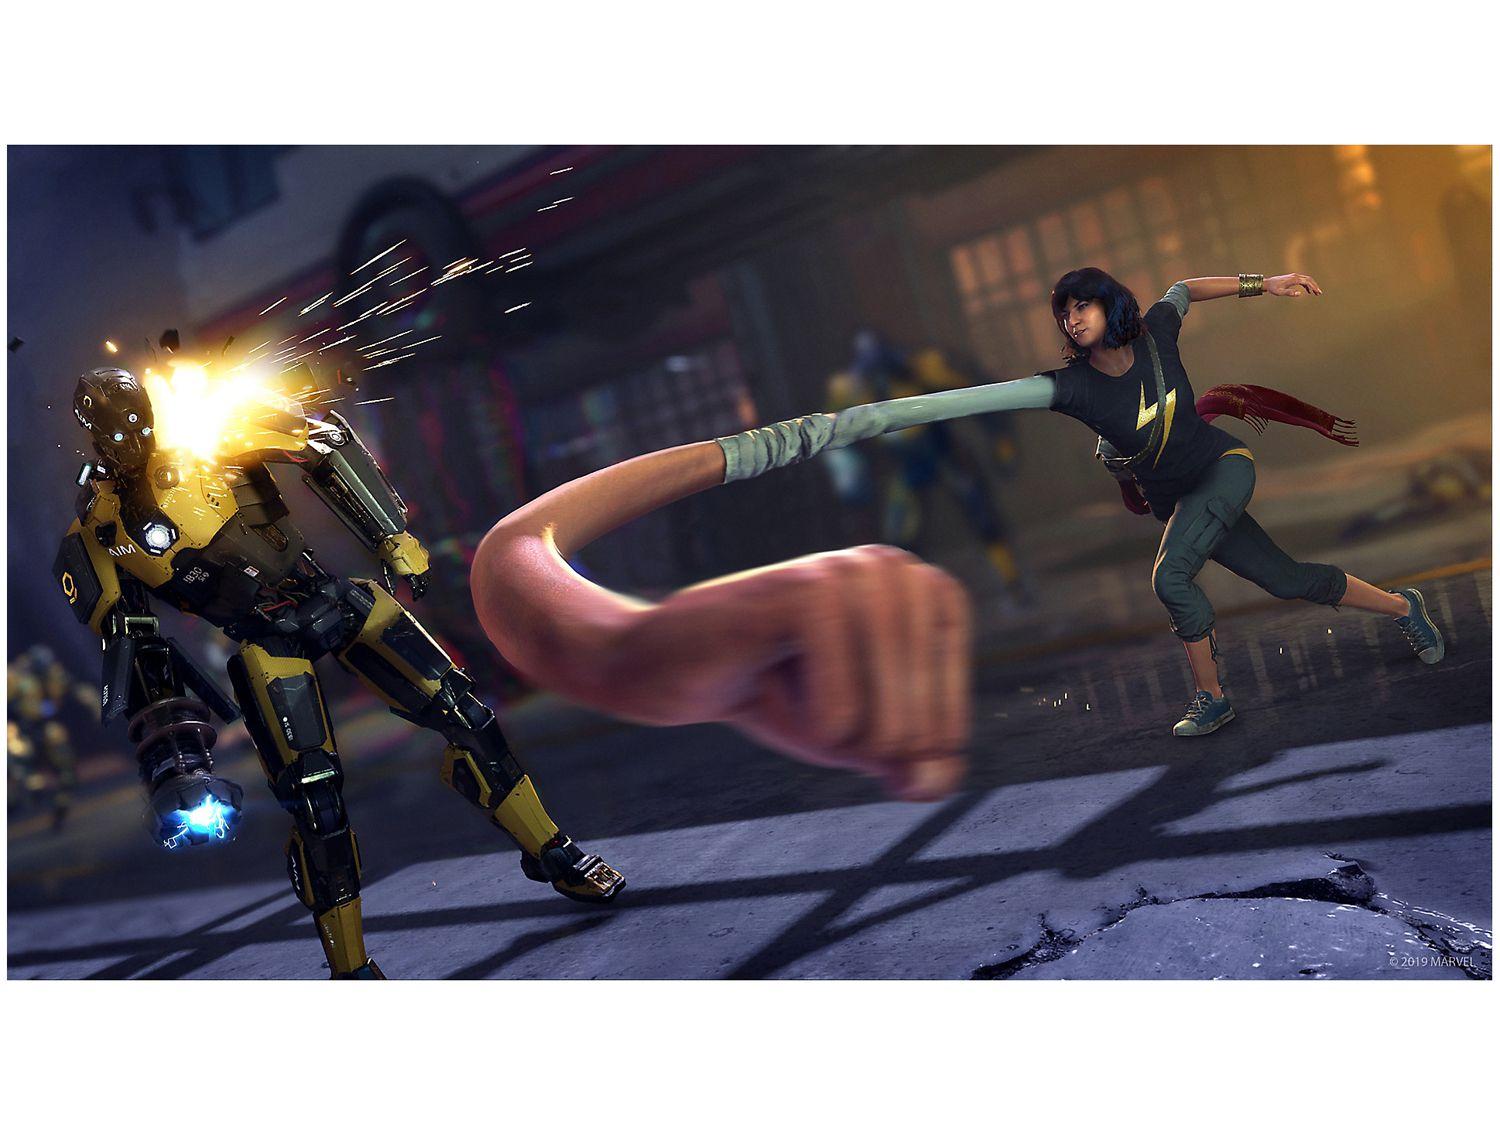 Tomb Raider - Versão Jogo do Ano para Xbox 360 - Square Enix - Outros Games  - Magazine Luiza